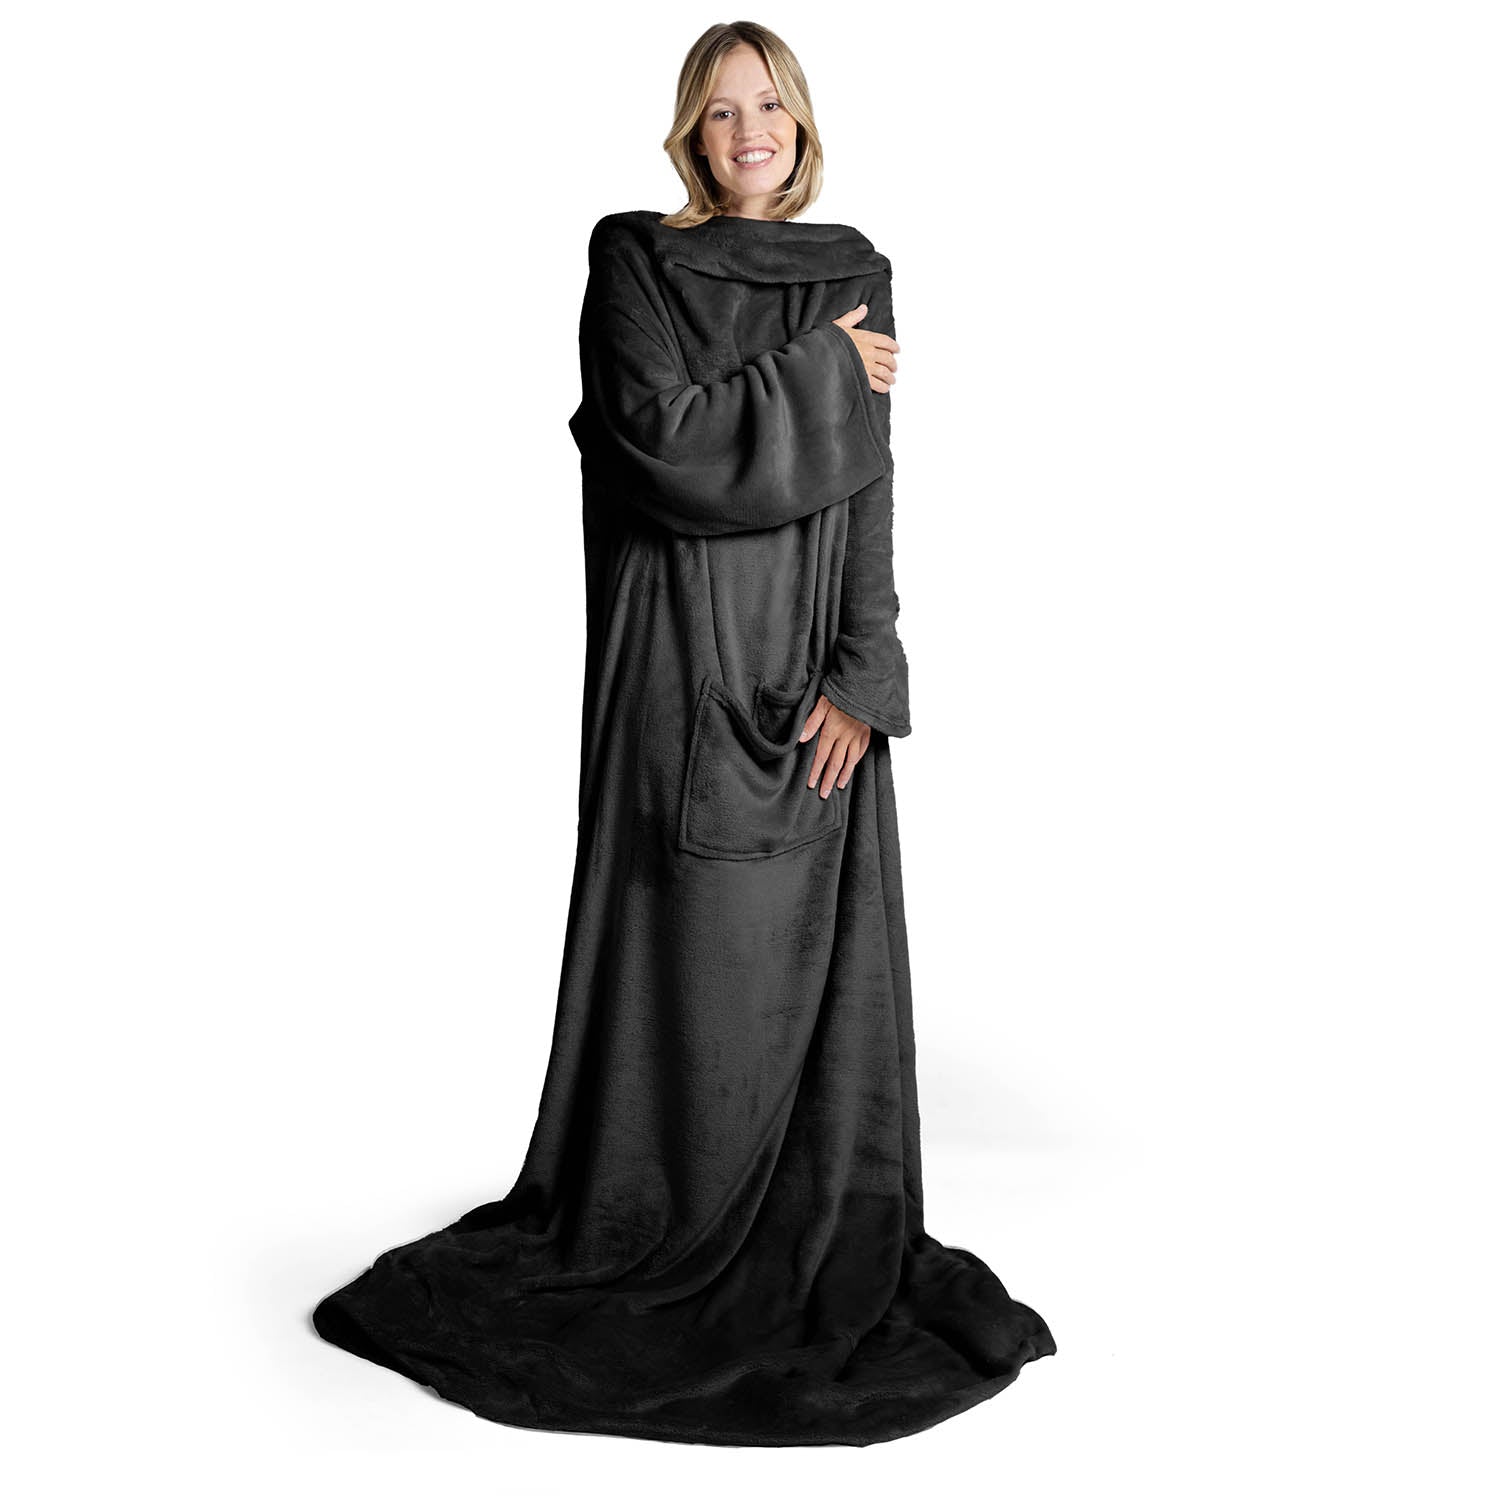 Lächelnde Frau in einem übergroßen anthrazit flauschigen Kleidungsstück das bis zum Boden reicht steht vor weißem Hintergrund.